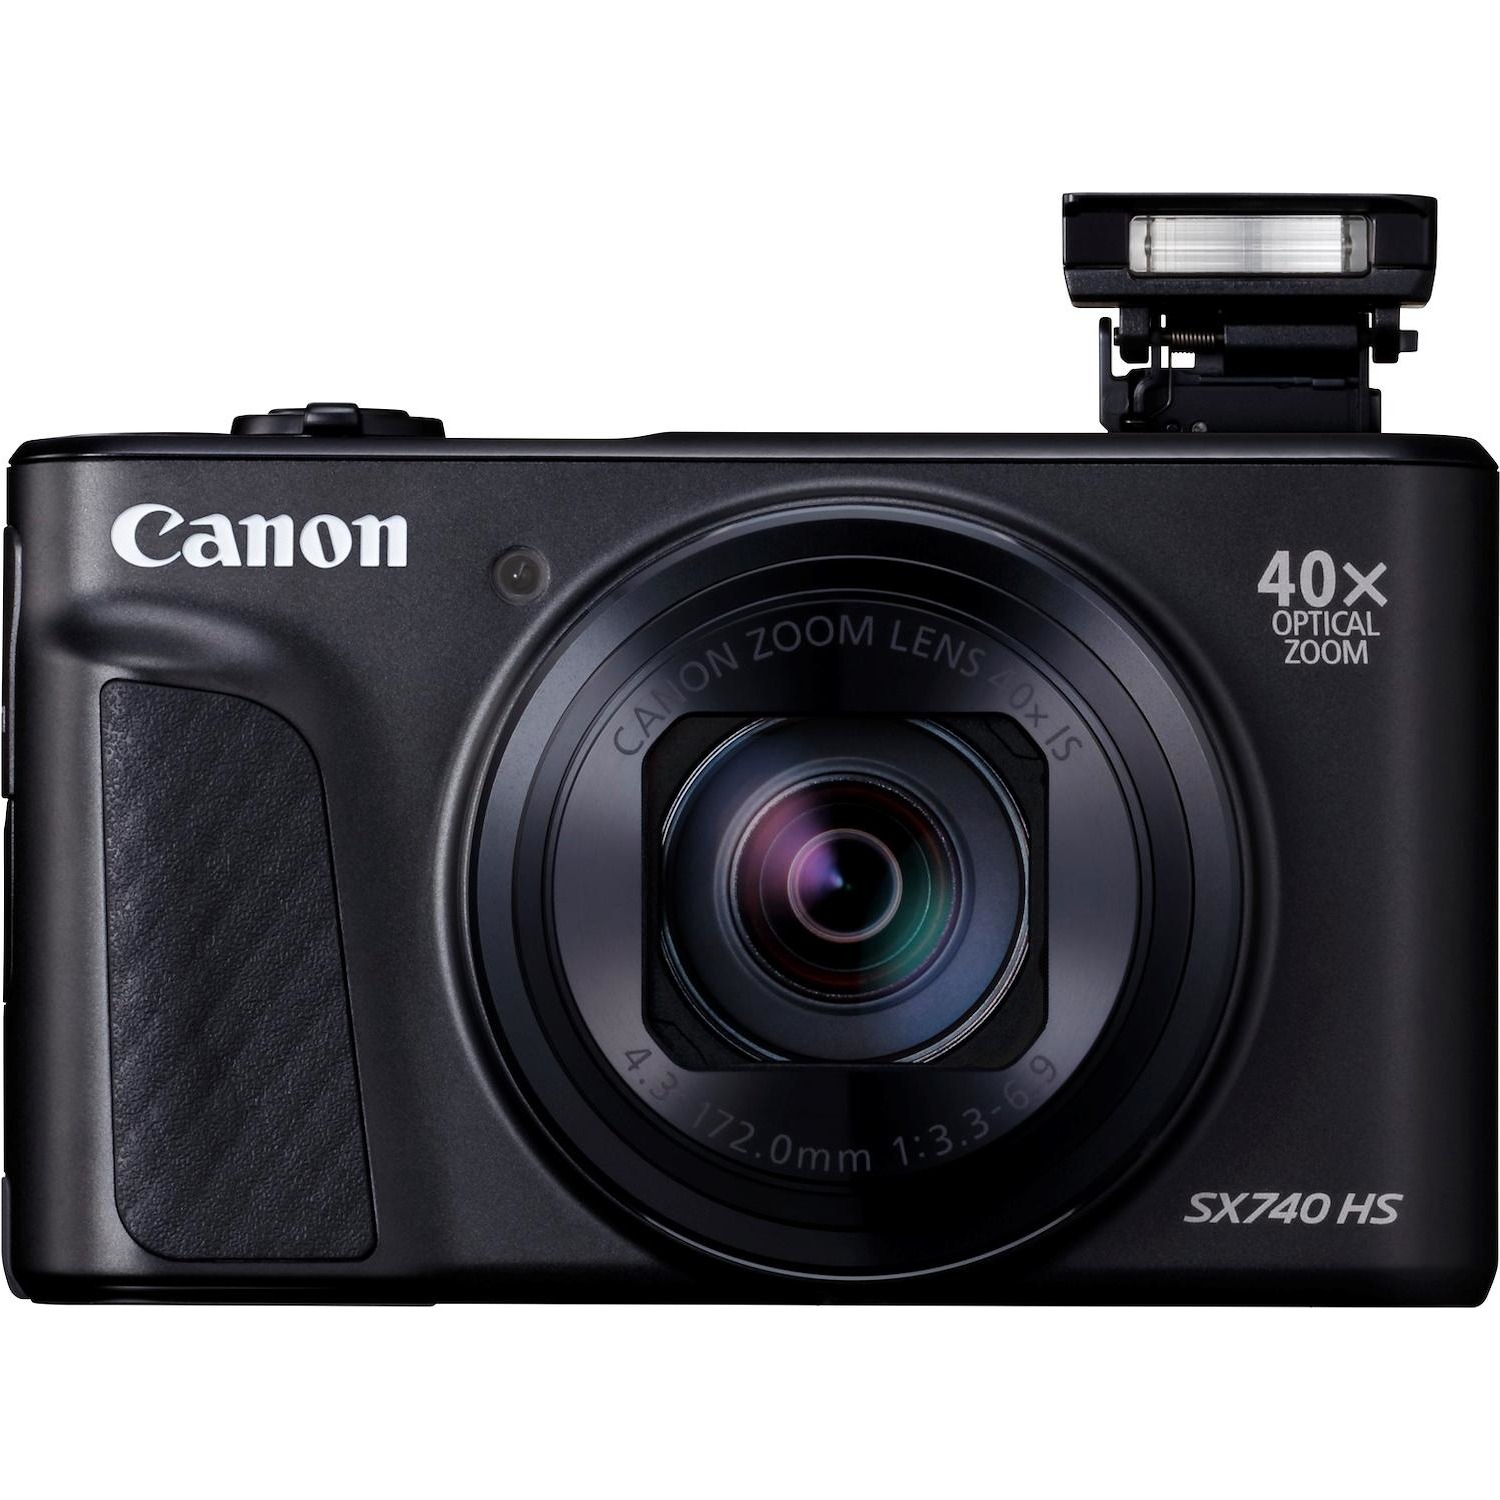 Immagine per Fotocamera compatta Canon Power Shot SX740 HS nera da DIMOStore